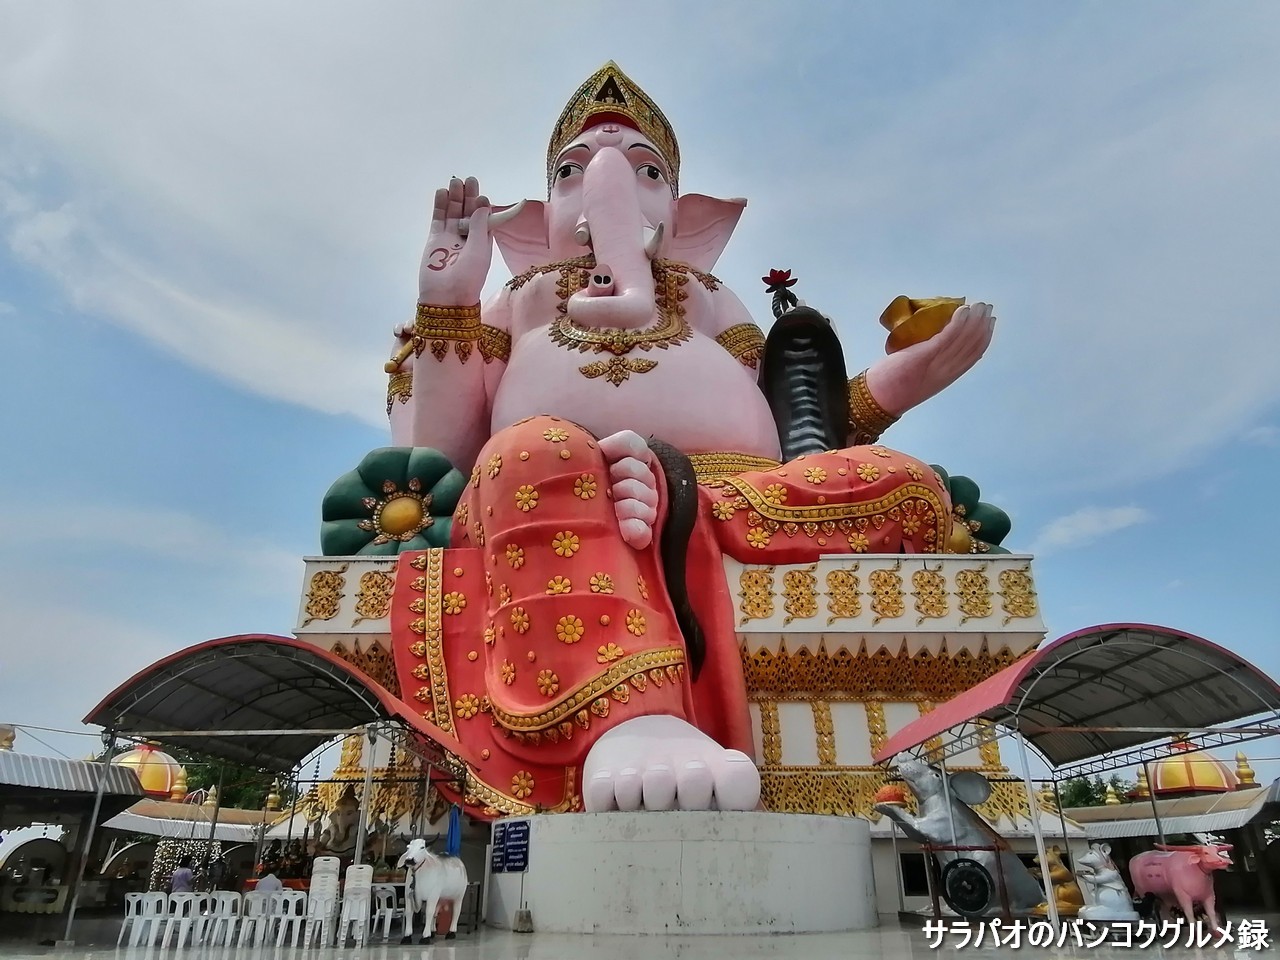 ワット・プローン・アーカートはアジア最大のガネーシャ像で有名な寺院＠チャチューンサオ県